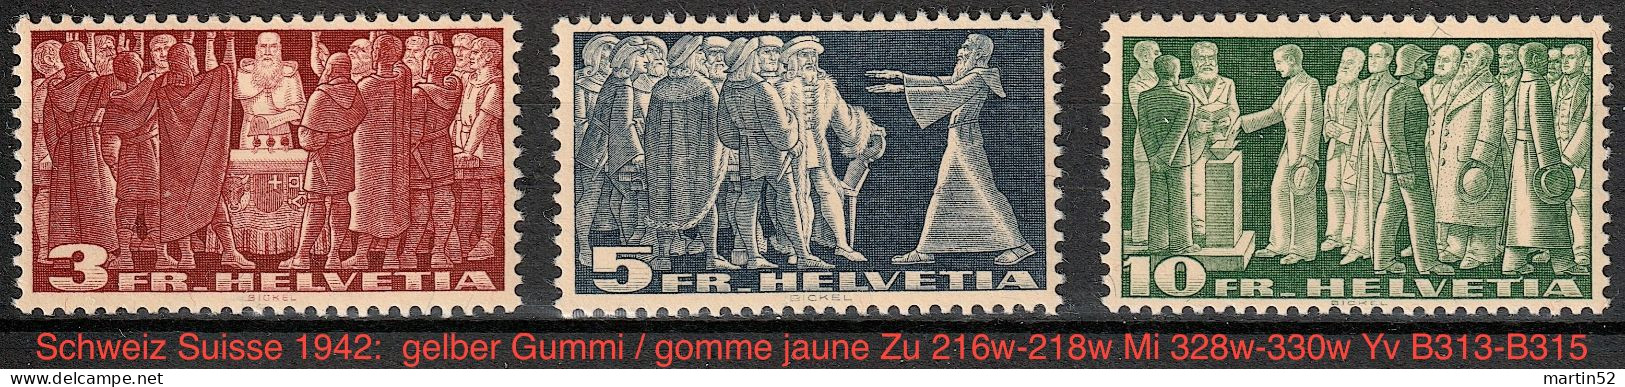 Schweiz Suisse 1942: Gelber Gummi+papier Et Gomme Jaune Zu 216w-218w Mi 328w-330w Yv B313-B315 ** MNH (Zu CHF 260.00) - Ongebruikt